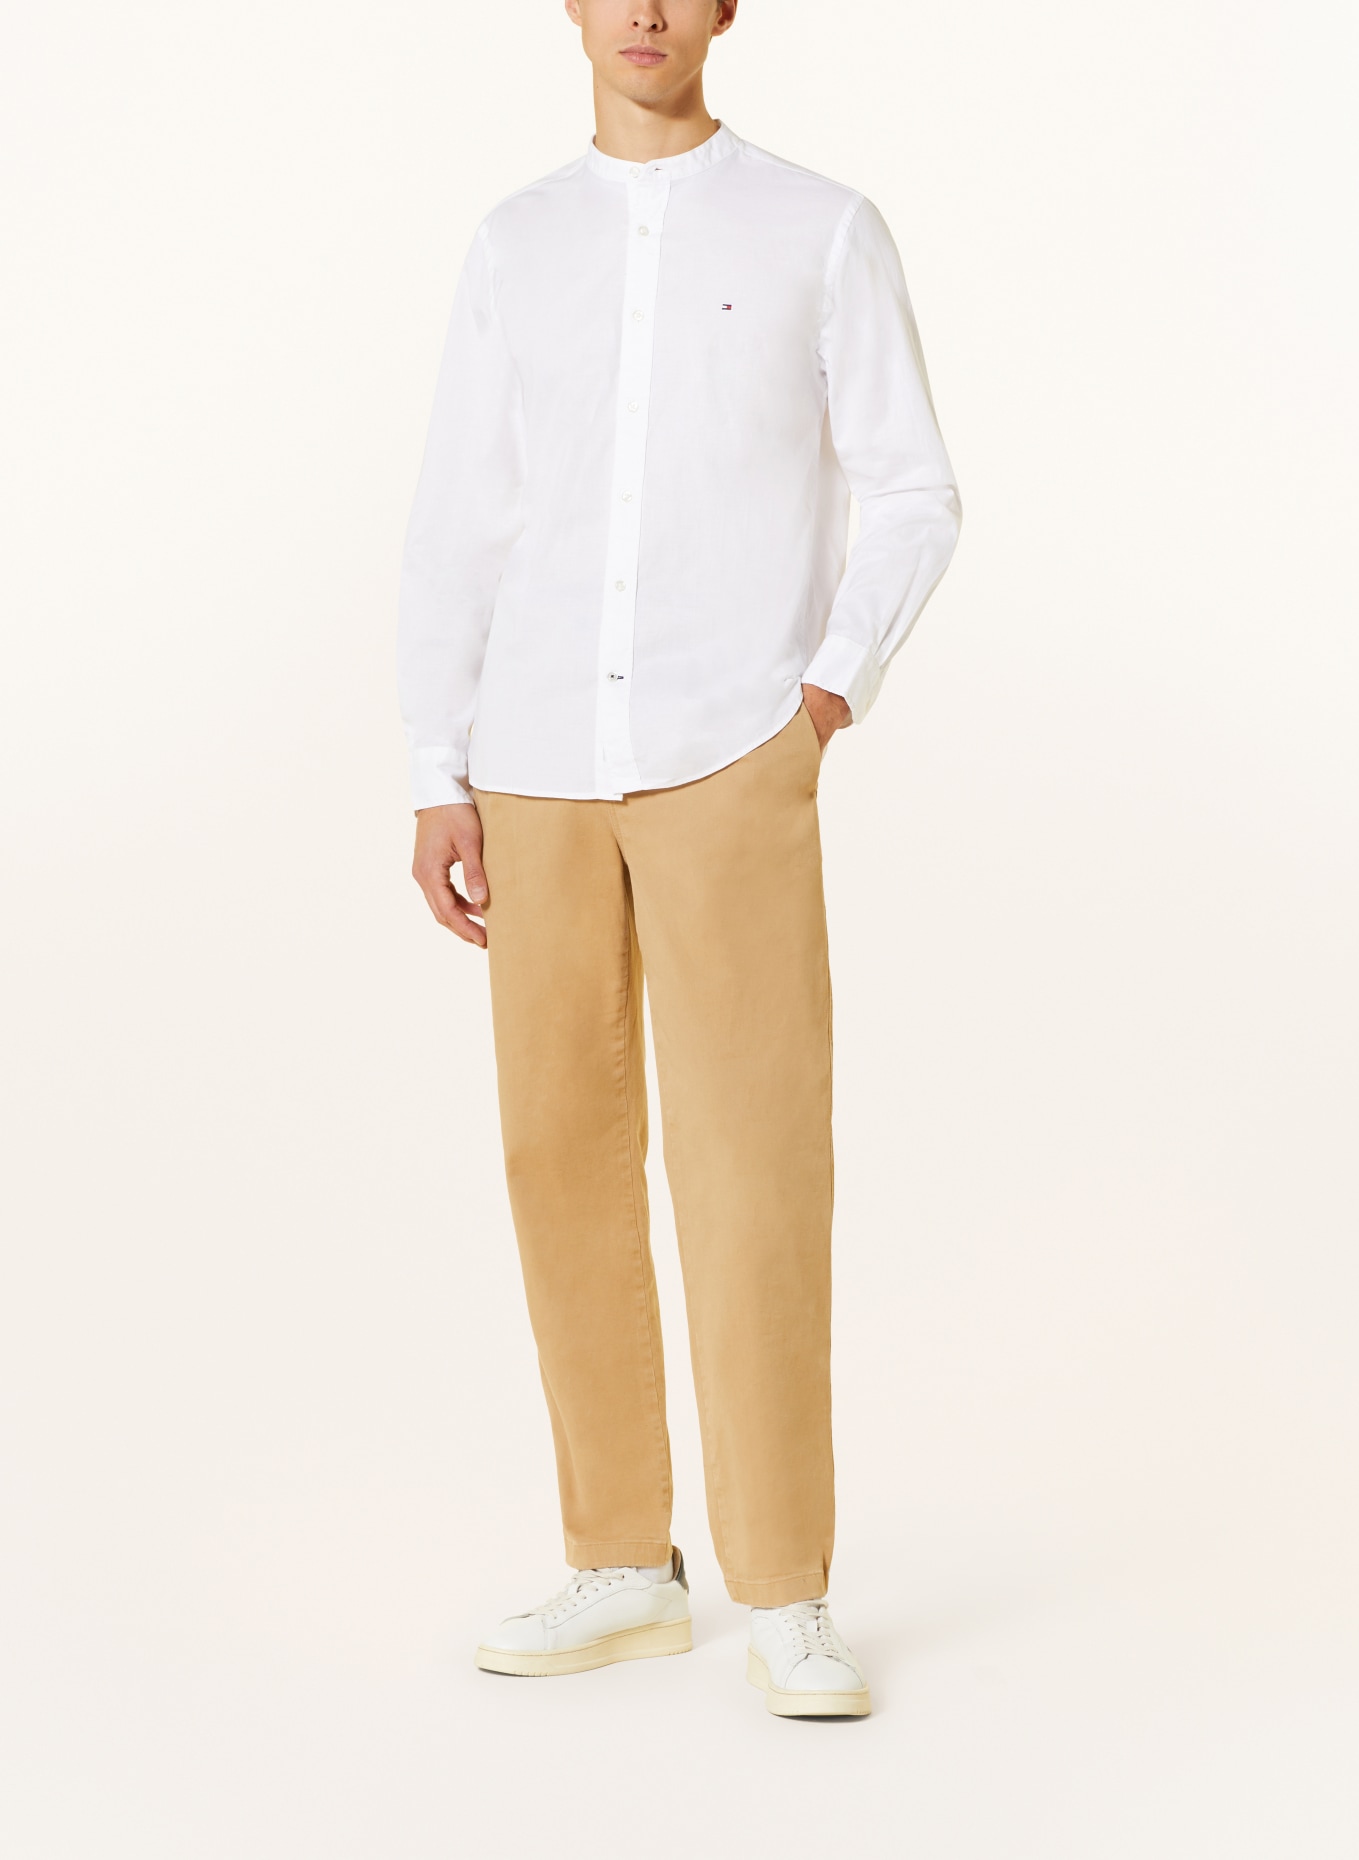 TOMMY HILFIGER Shirt regular fit, Color: WHITE (Image 2)